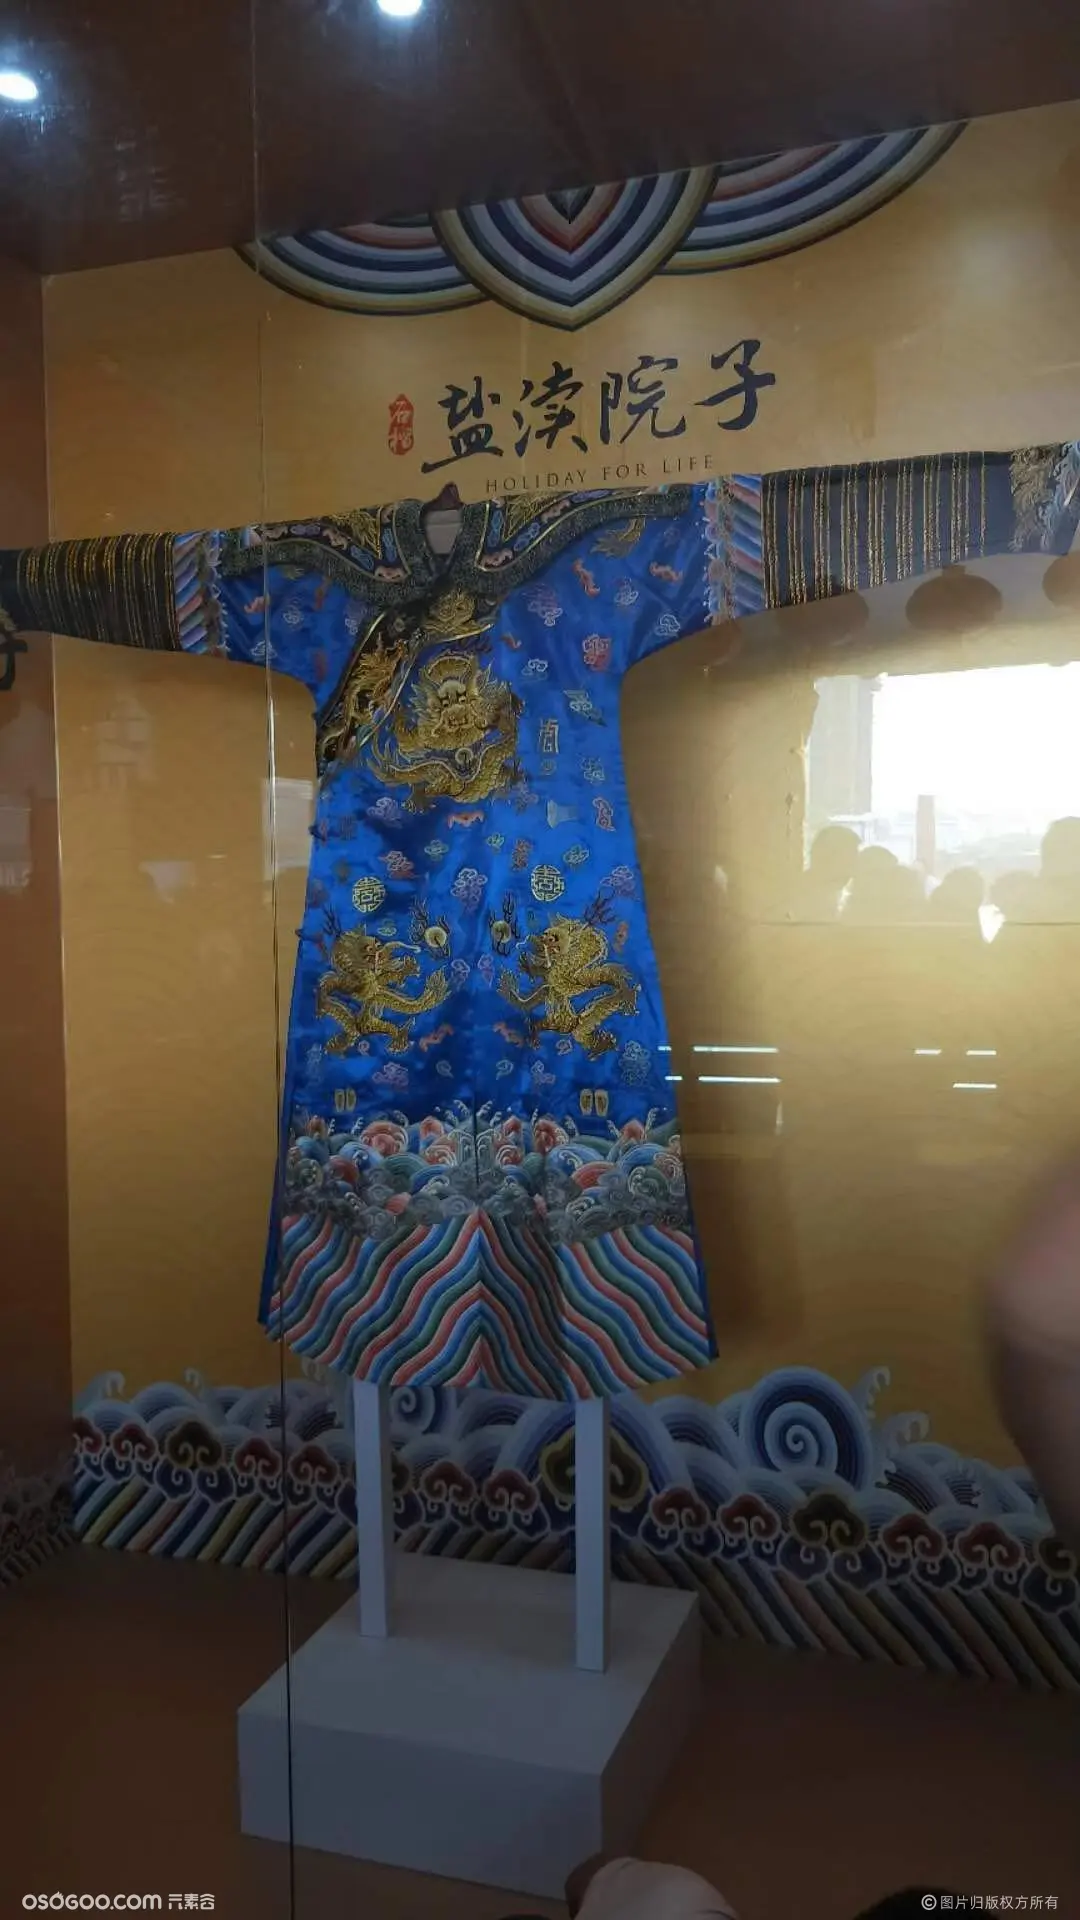 中国传统文艺展品龙袍首秀展览租赁